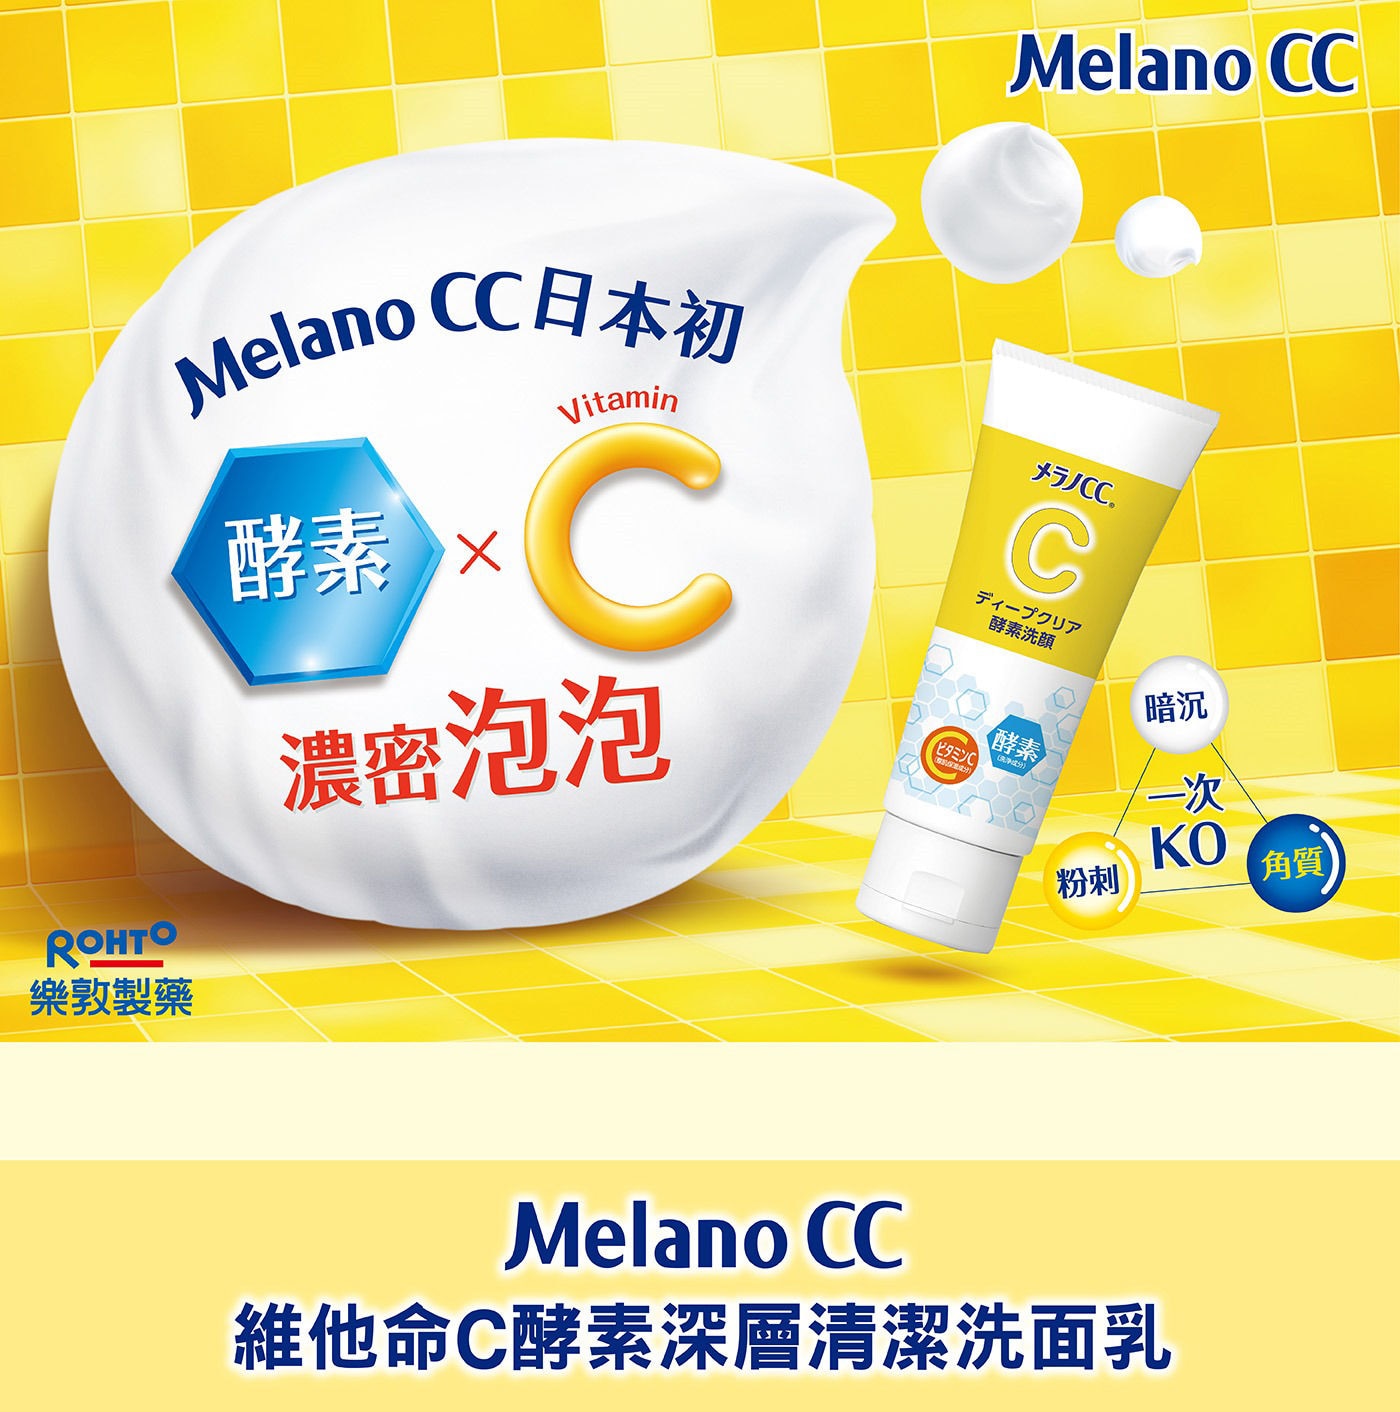 Melano CC維他命C酵素深層清潔洗面乳含有酶x維生素C。毛孔護理含有可徹底去除蛋白質污漬的蛋白水解酶。